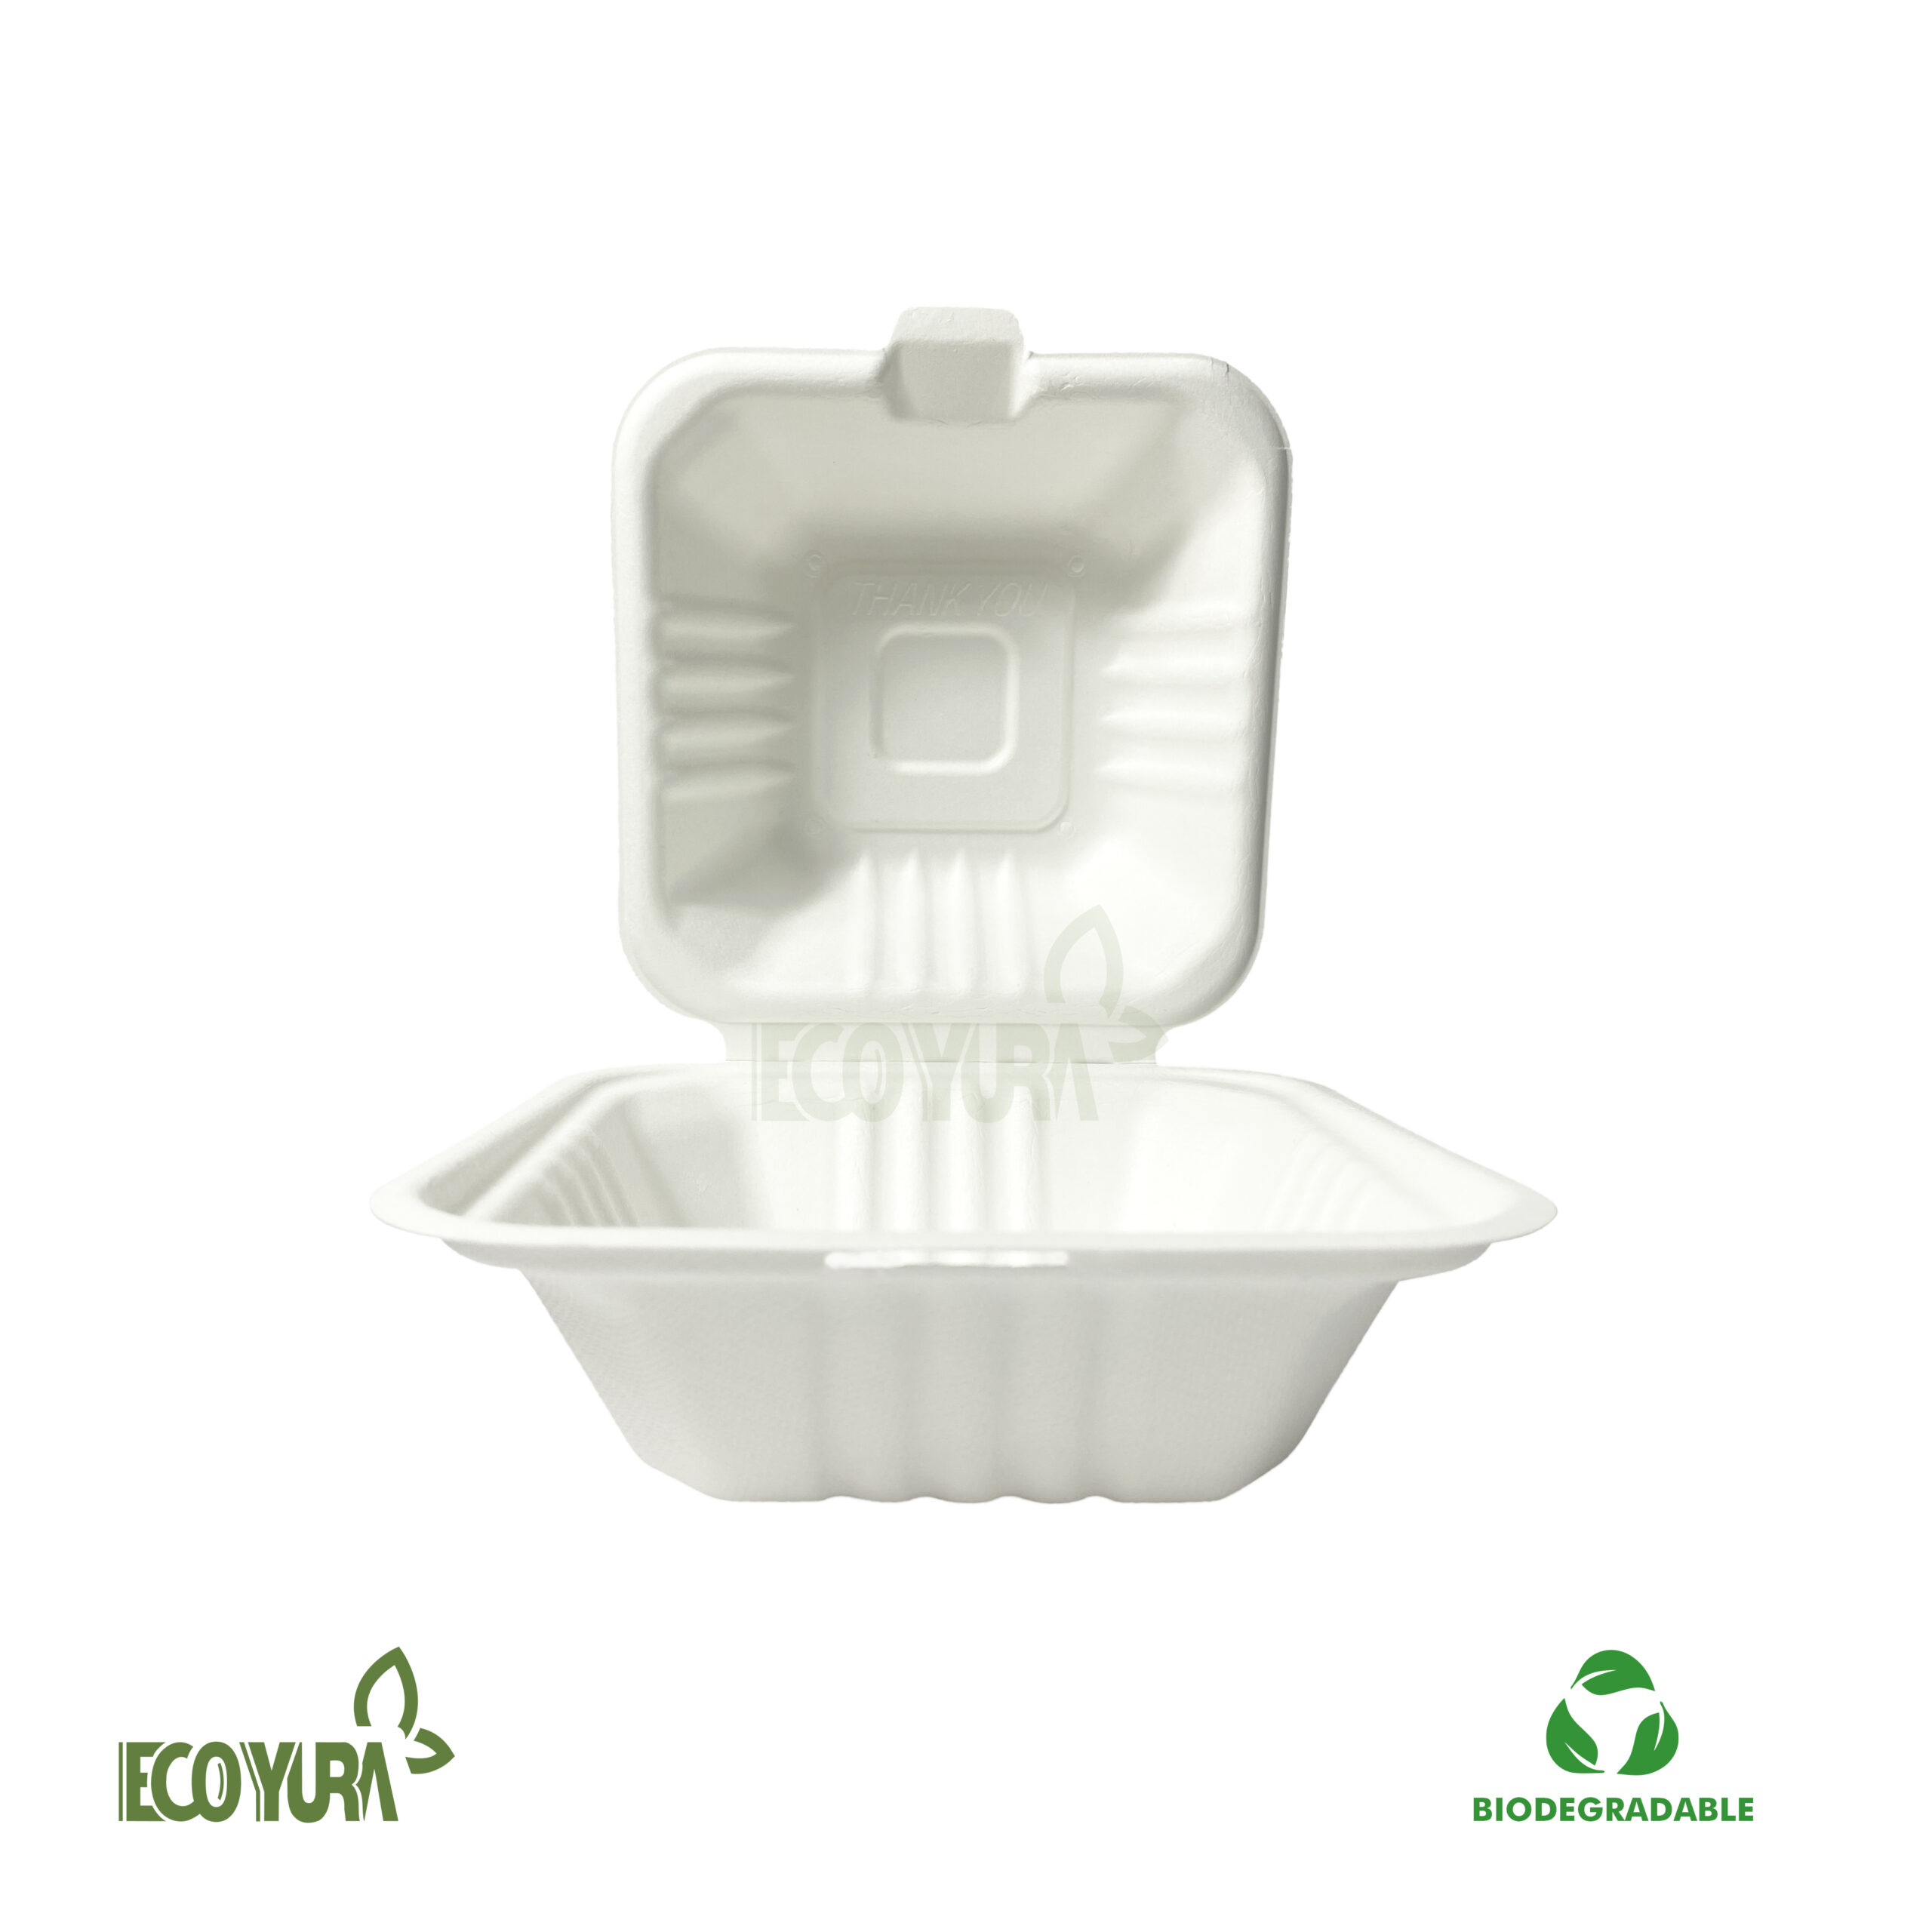 Find your favorite product Eco Estrategia Peruana: Envase fibra CT4 fondo  pequeño, tapers para comida